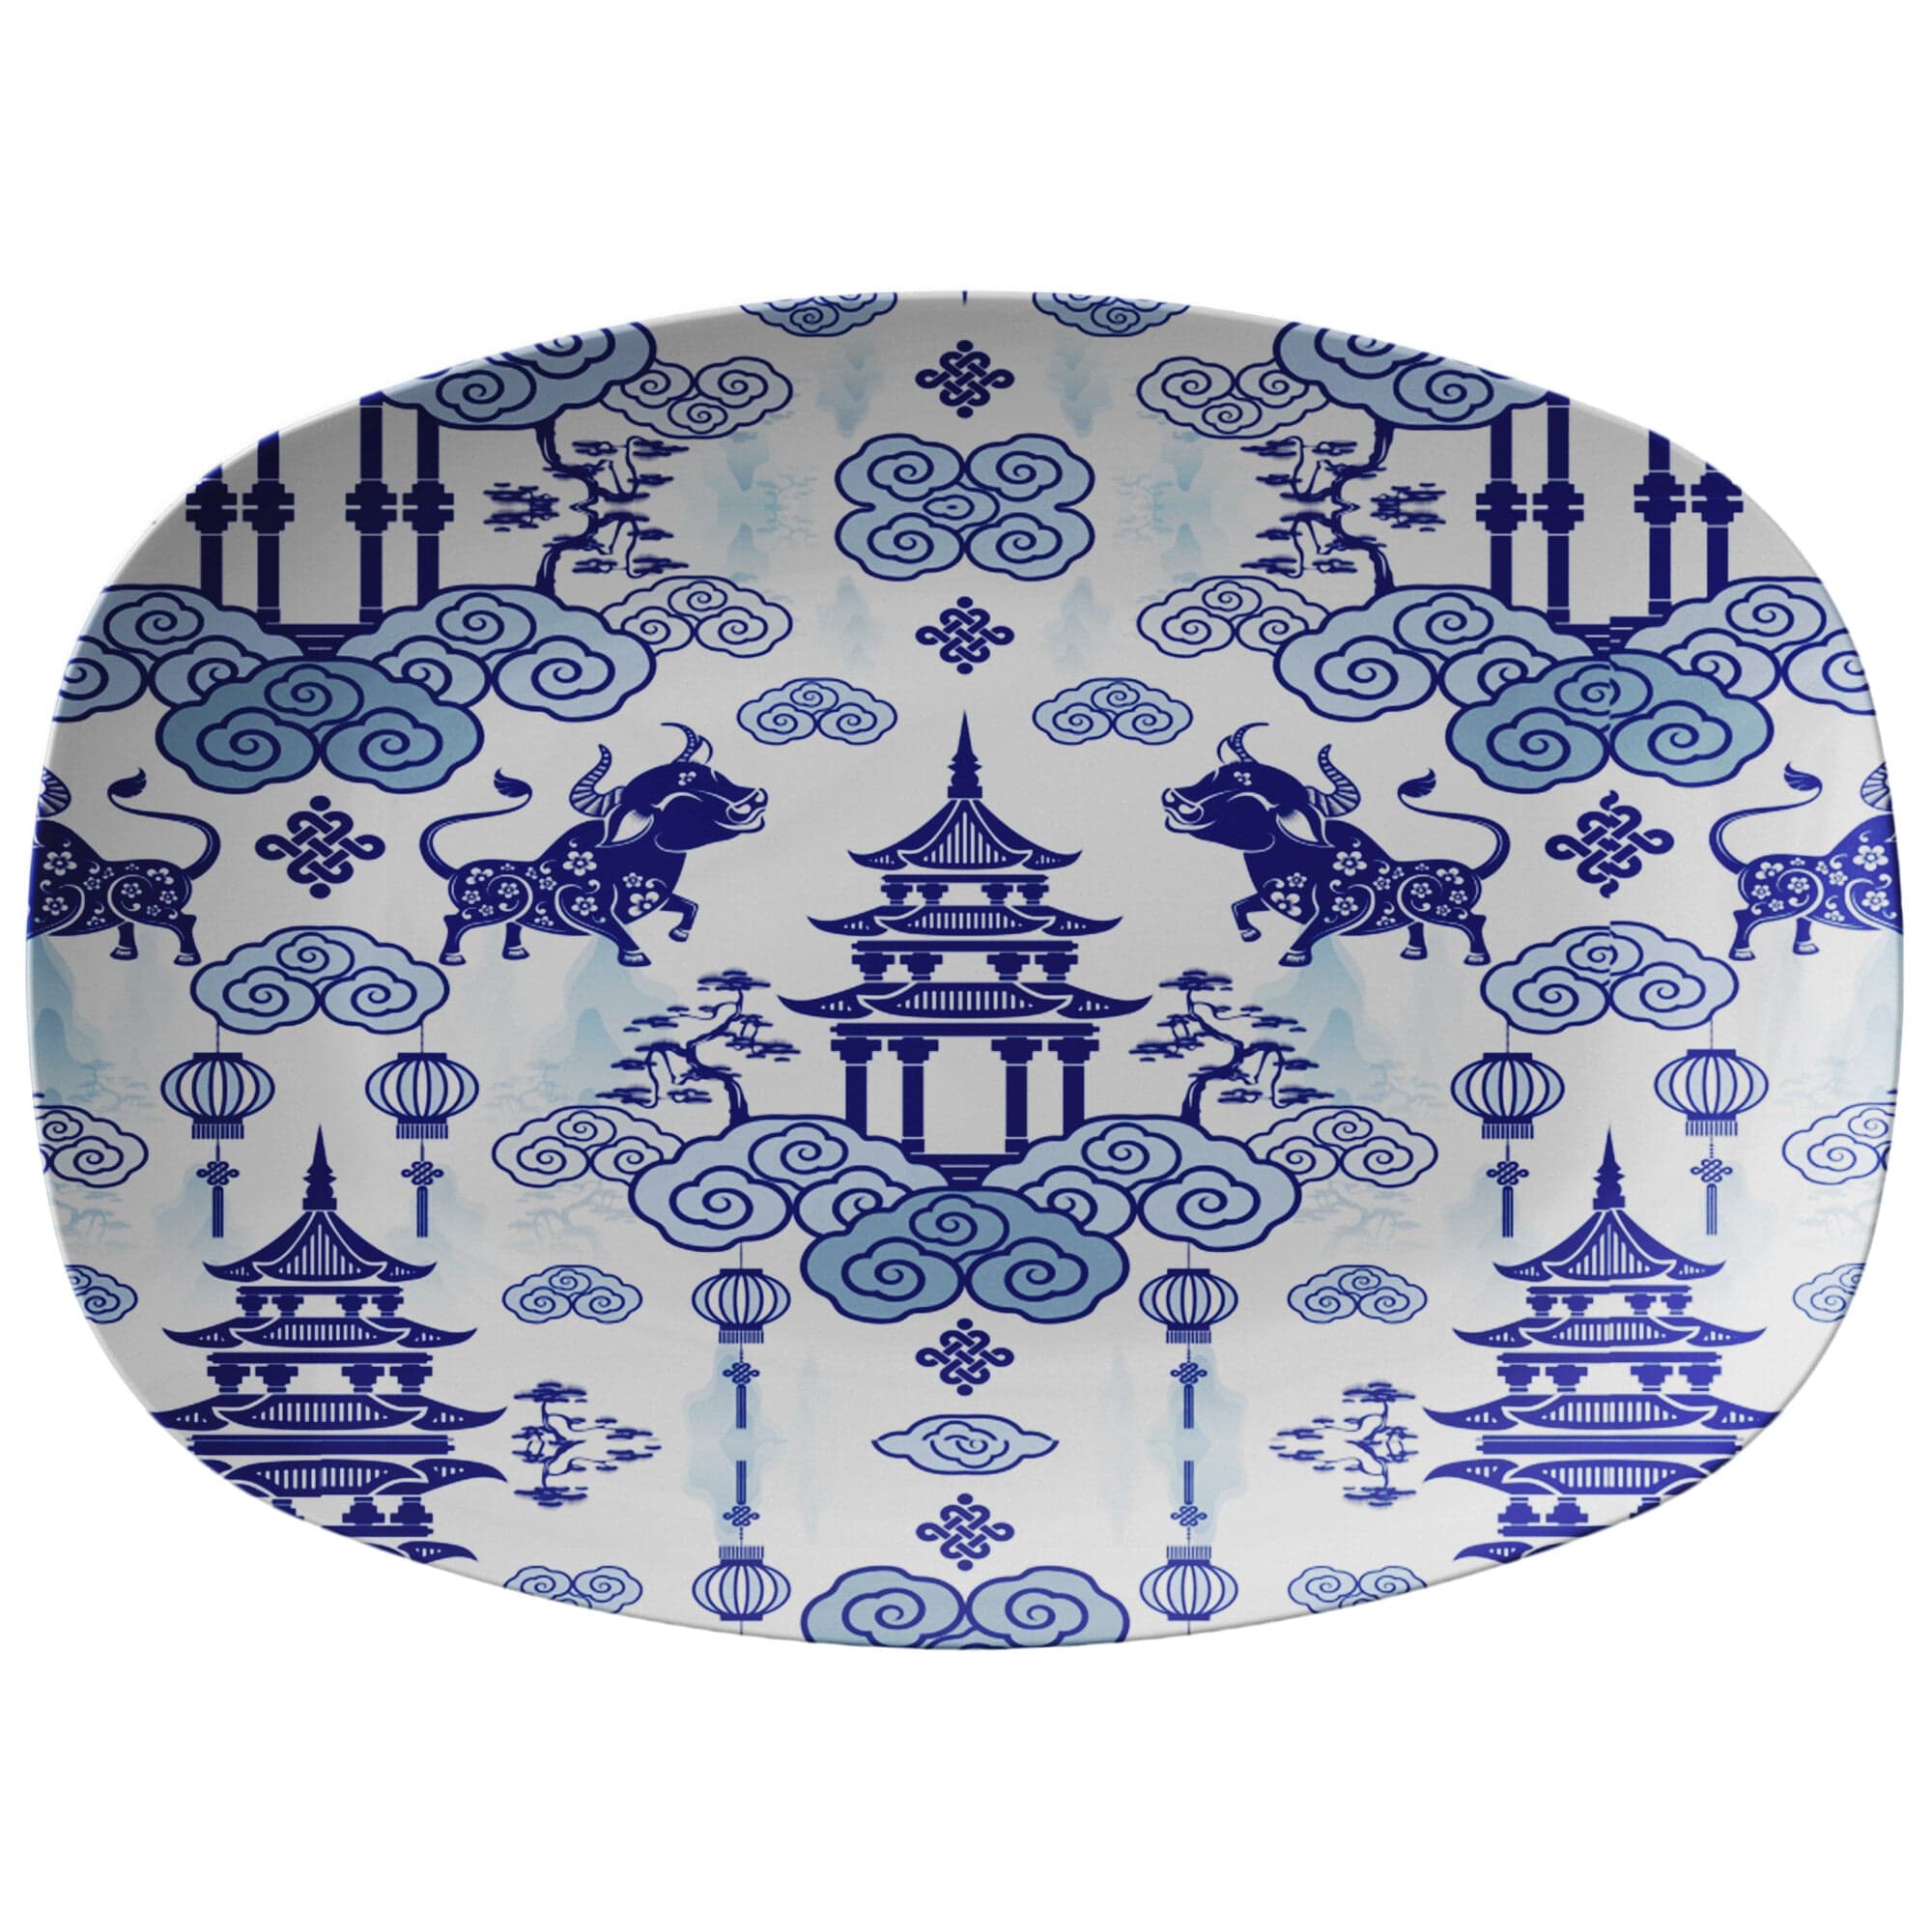 Kate McEnroe New York Chinoiserie Pagoda Bulls Platter Serving Platters 9727